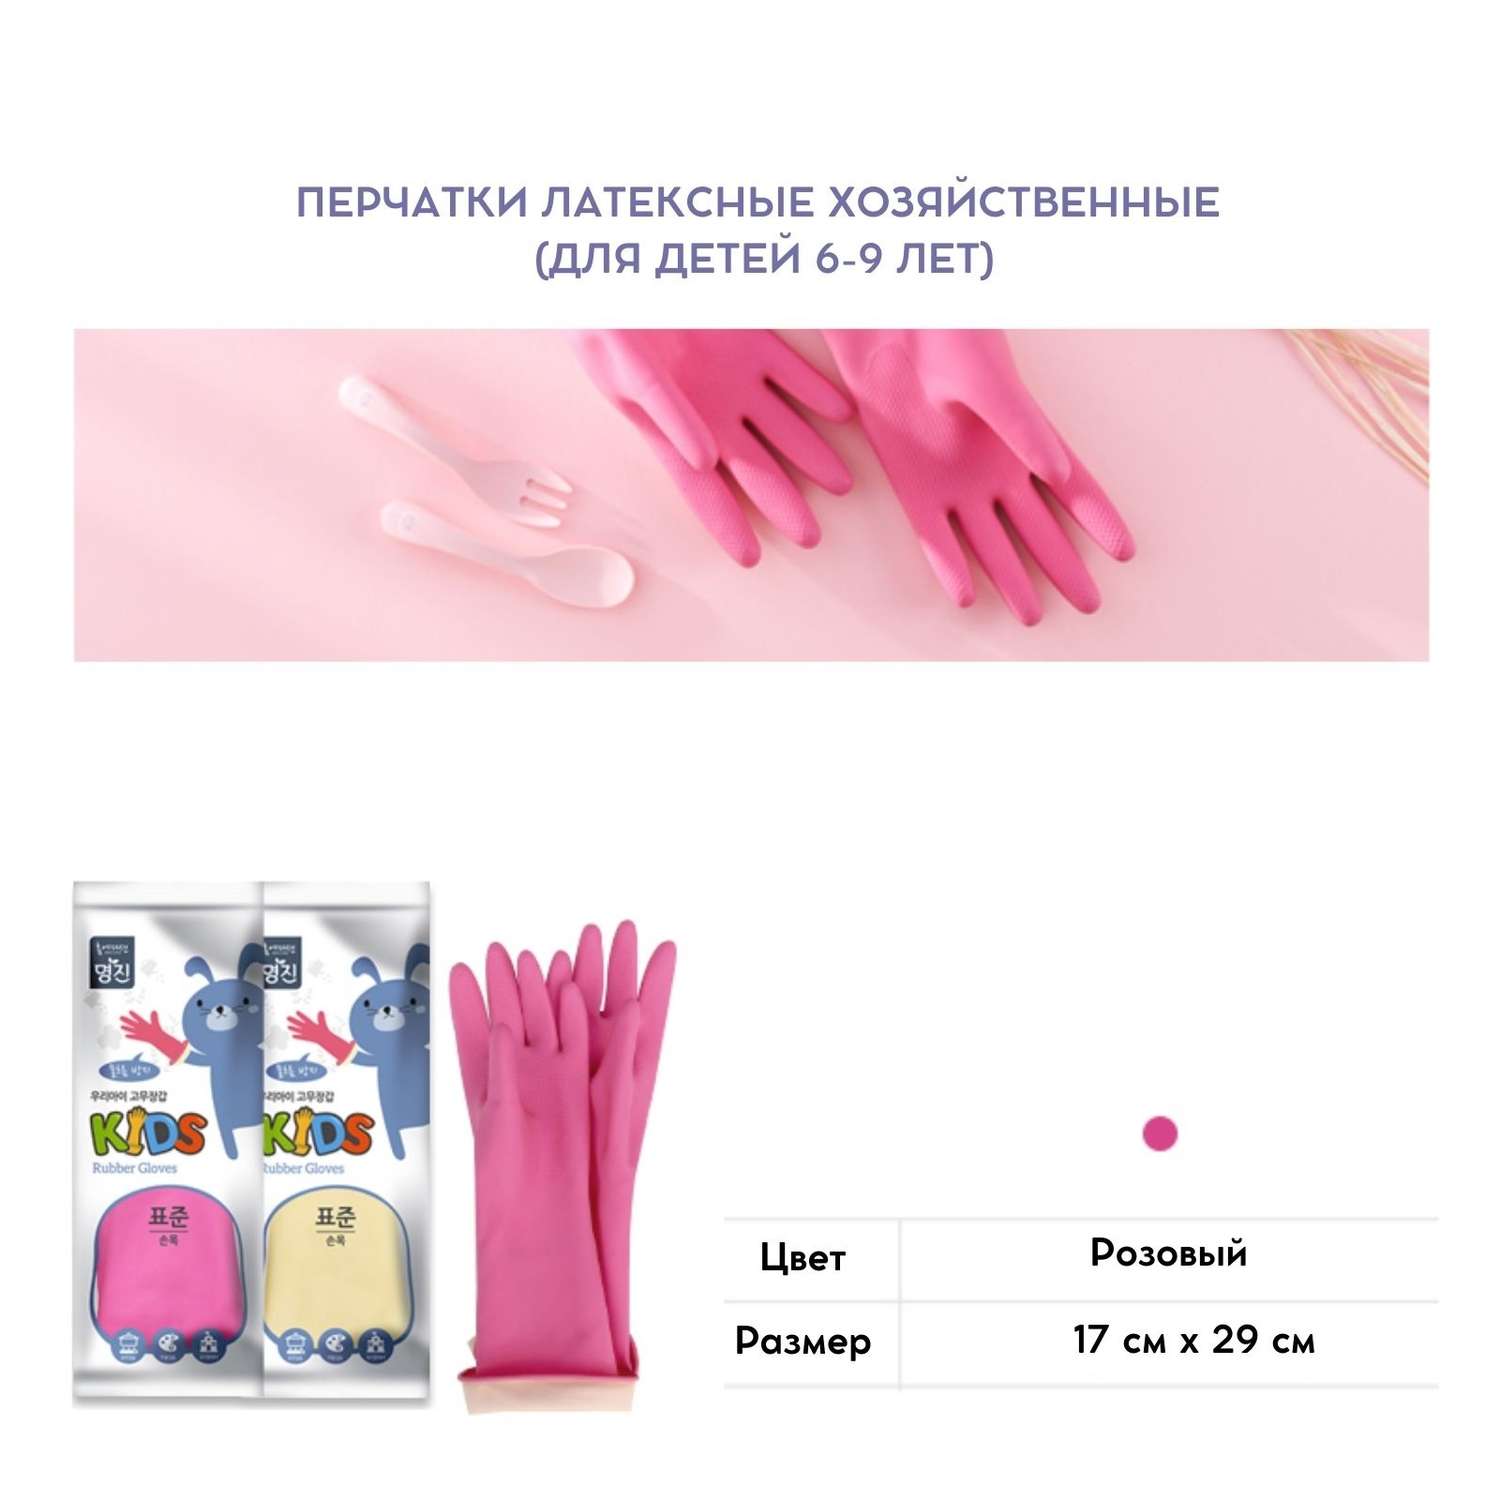 Перчатки латексные HOME EDITION MYUNGJIN хозяйственные для детей от 6 до 9 лет 29х17 см цвет розовый - фото 4